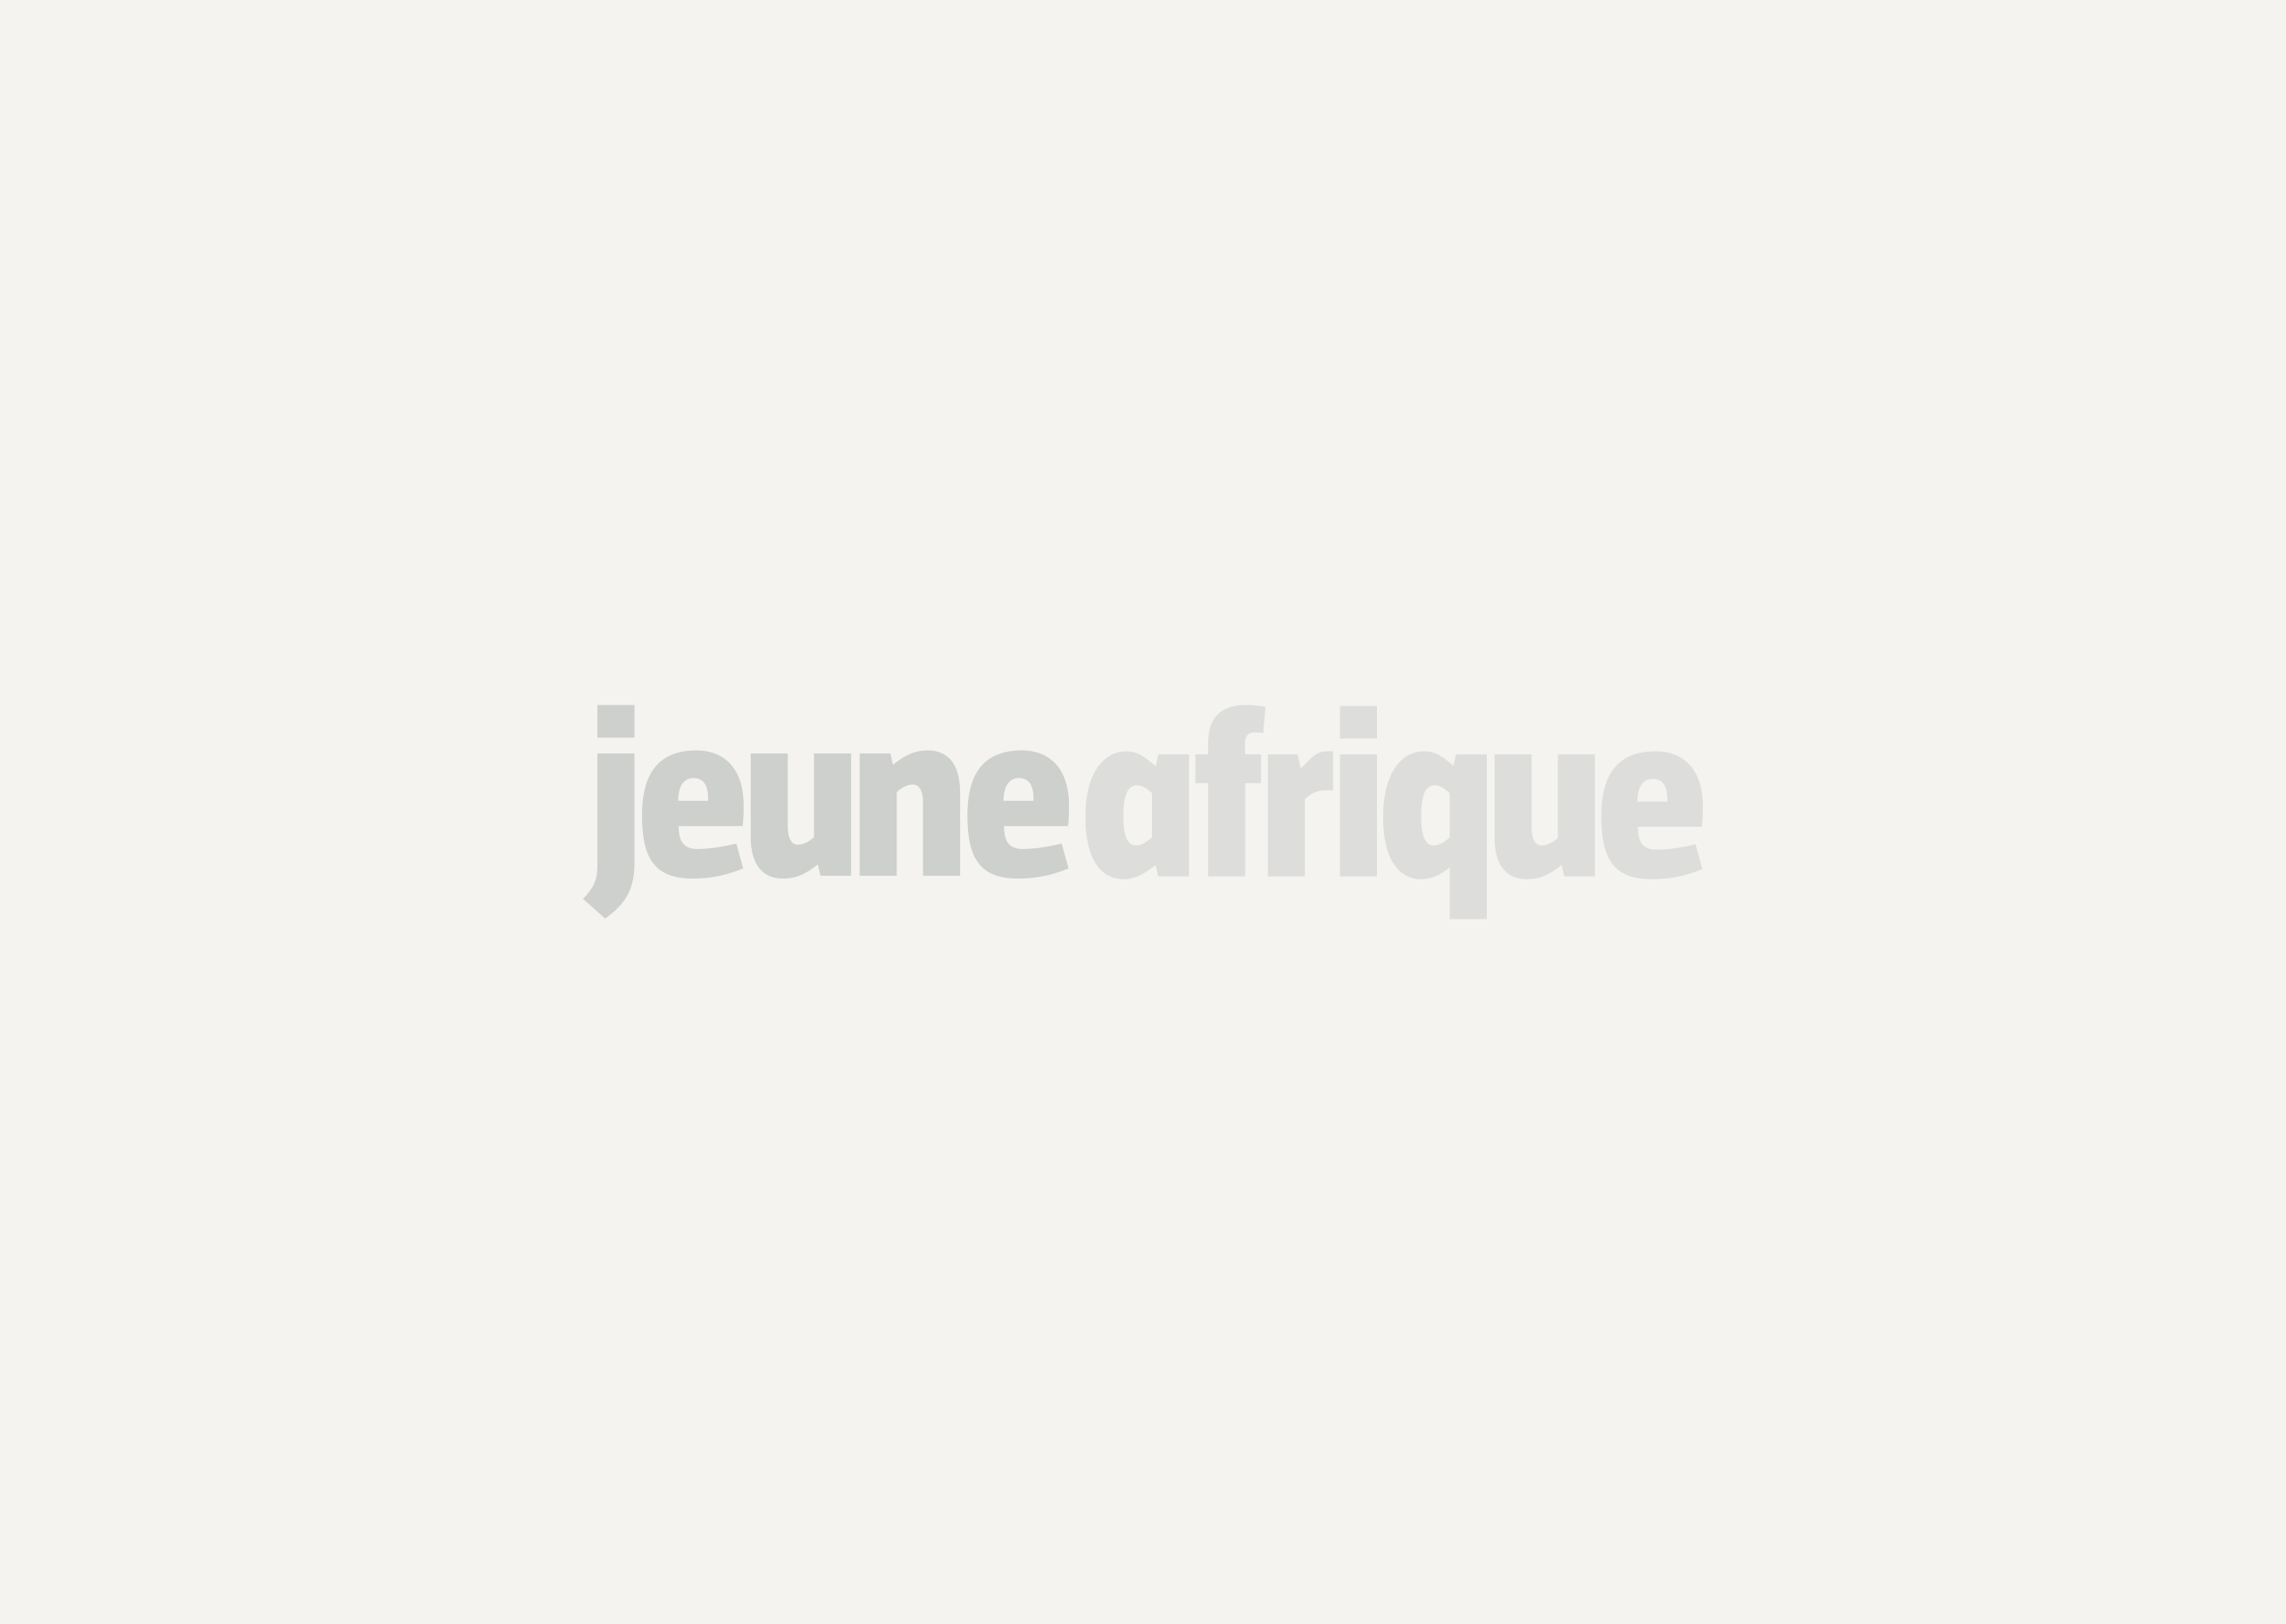 [Tribune] Condamnation du journaliste Ignace Sossou au Bénin : 